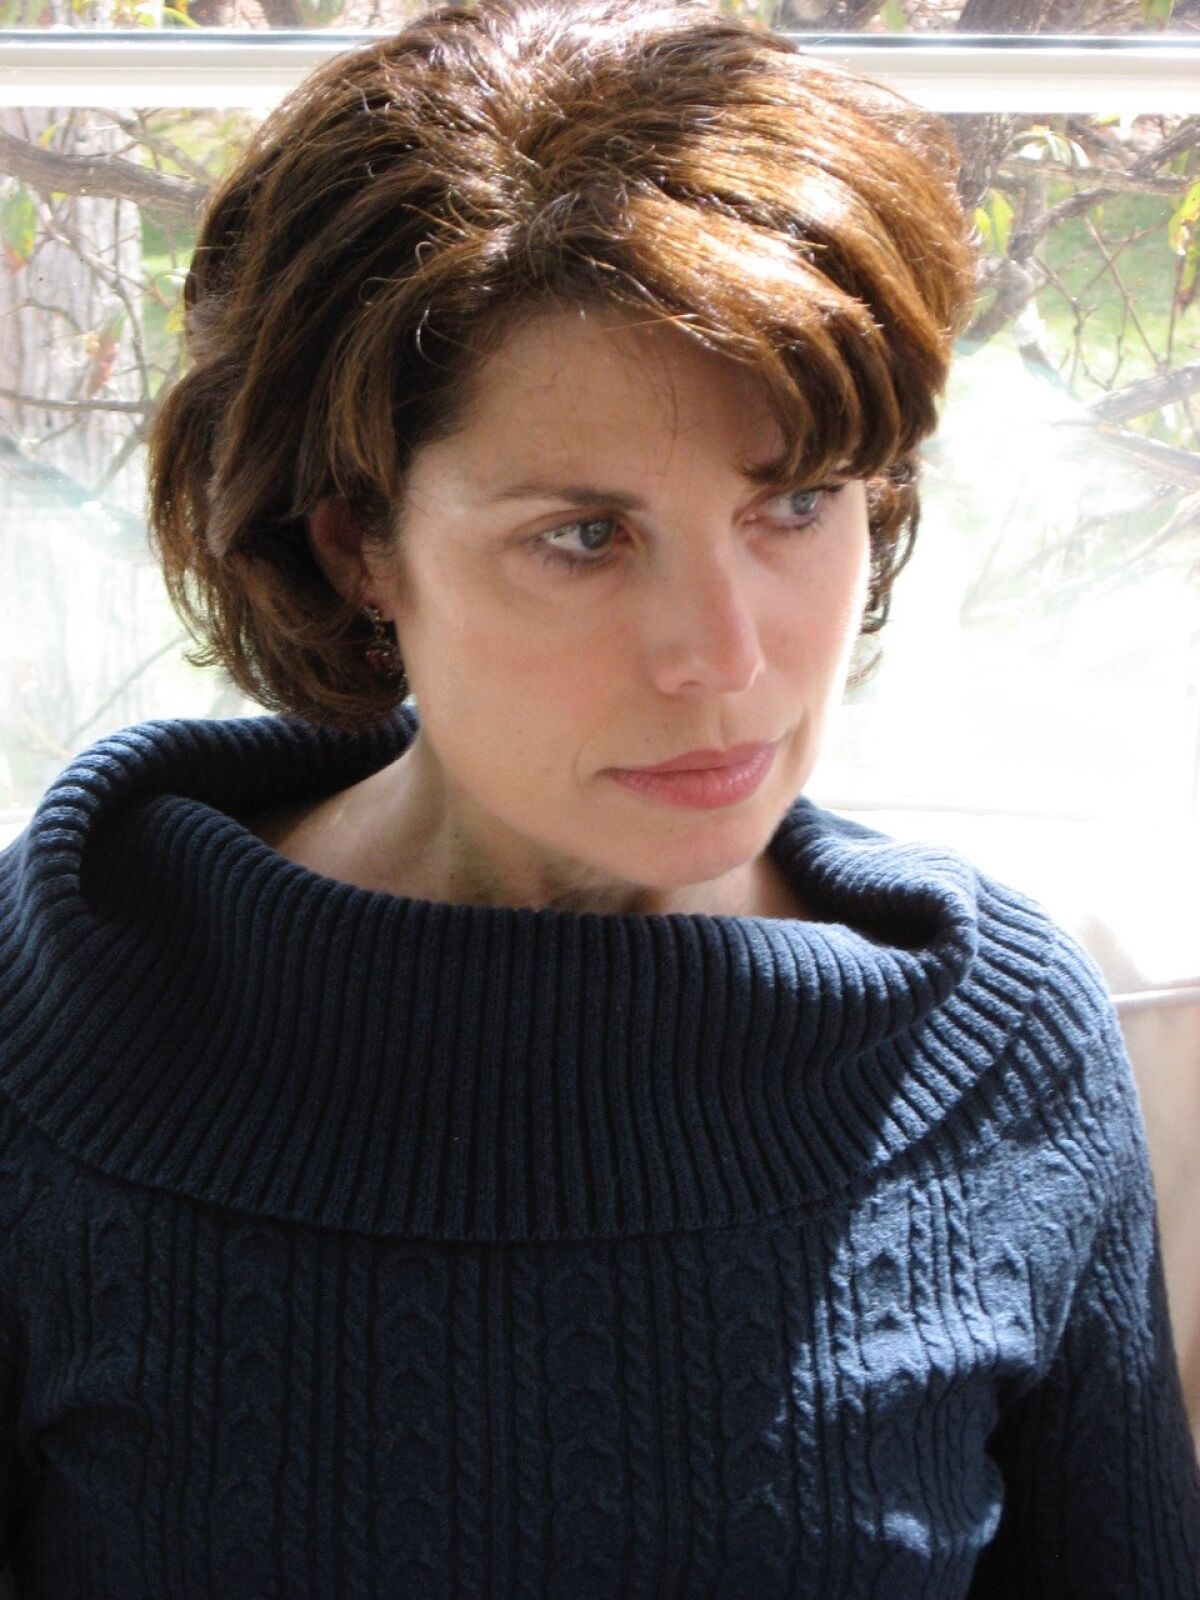 Author Nancy Goldstone